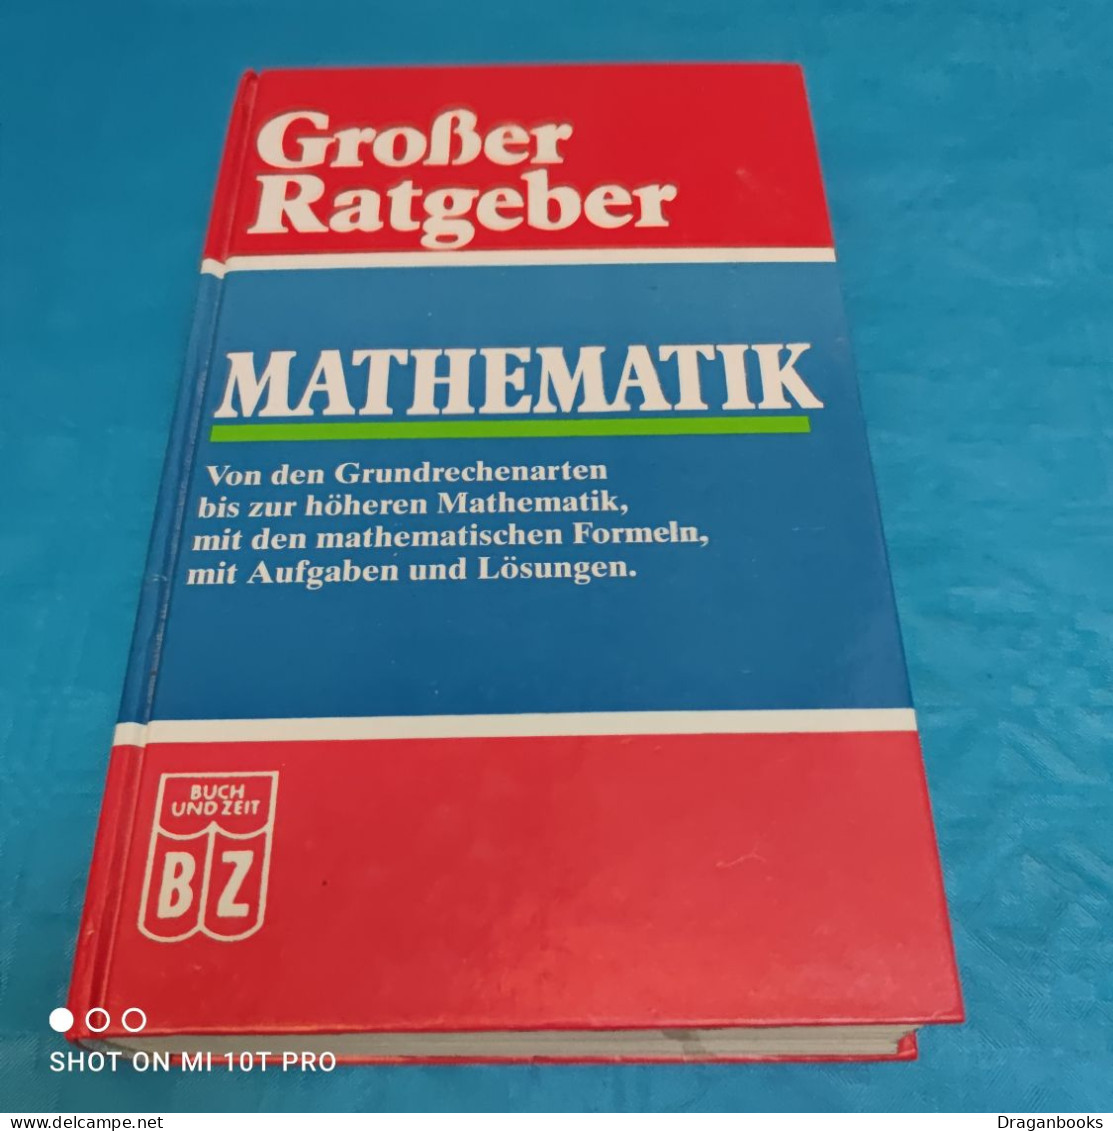 Grosser Ratgeber - Mathematik - Libri Scolastici